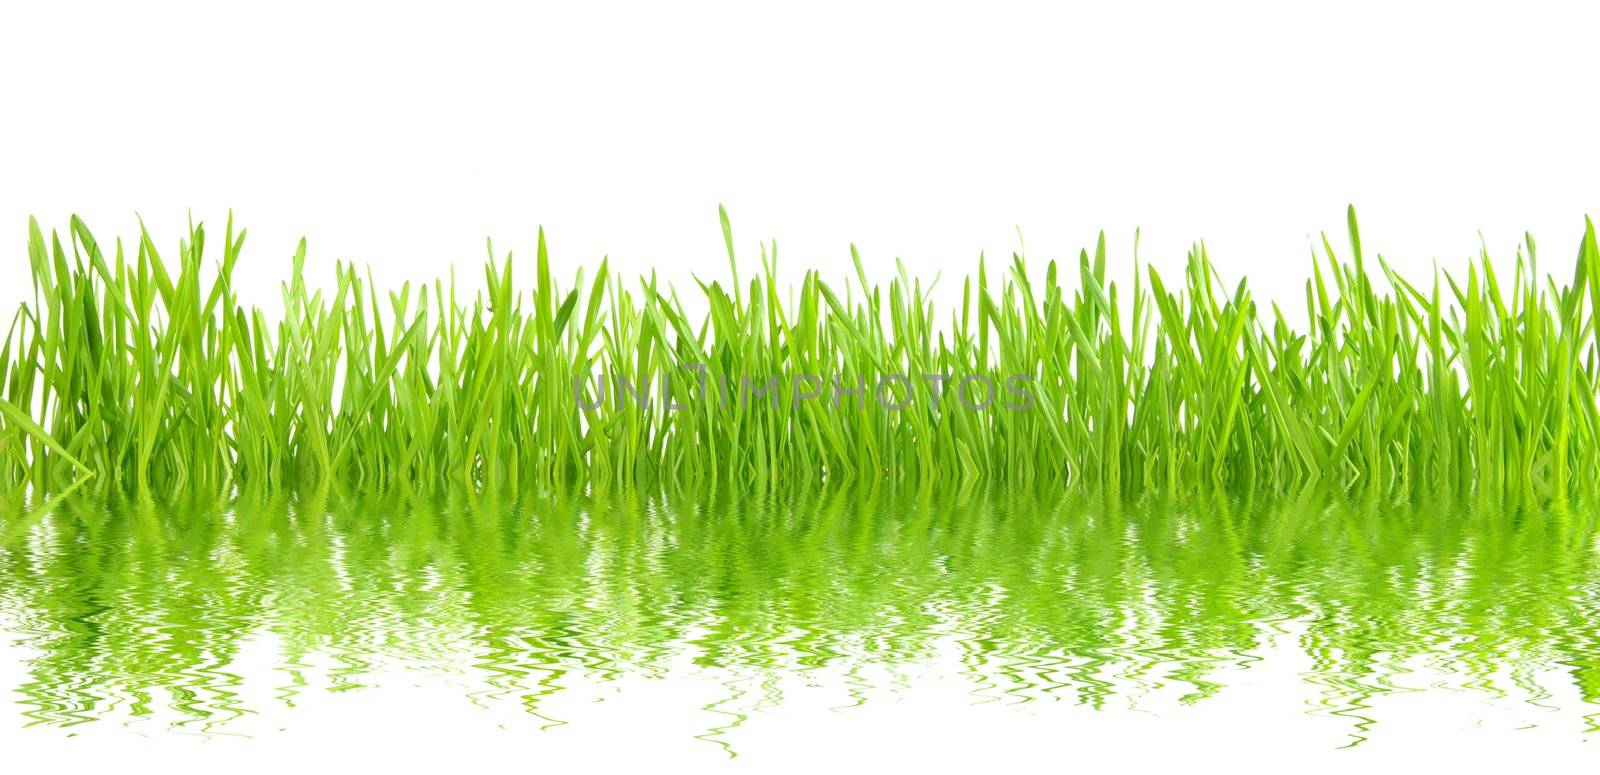 green grass by Pakhnyushchyy